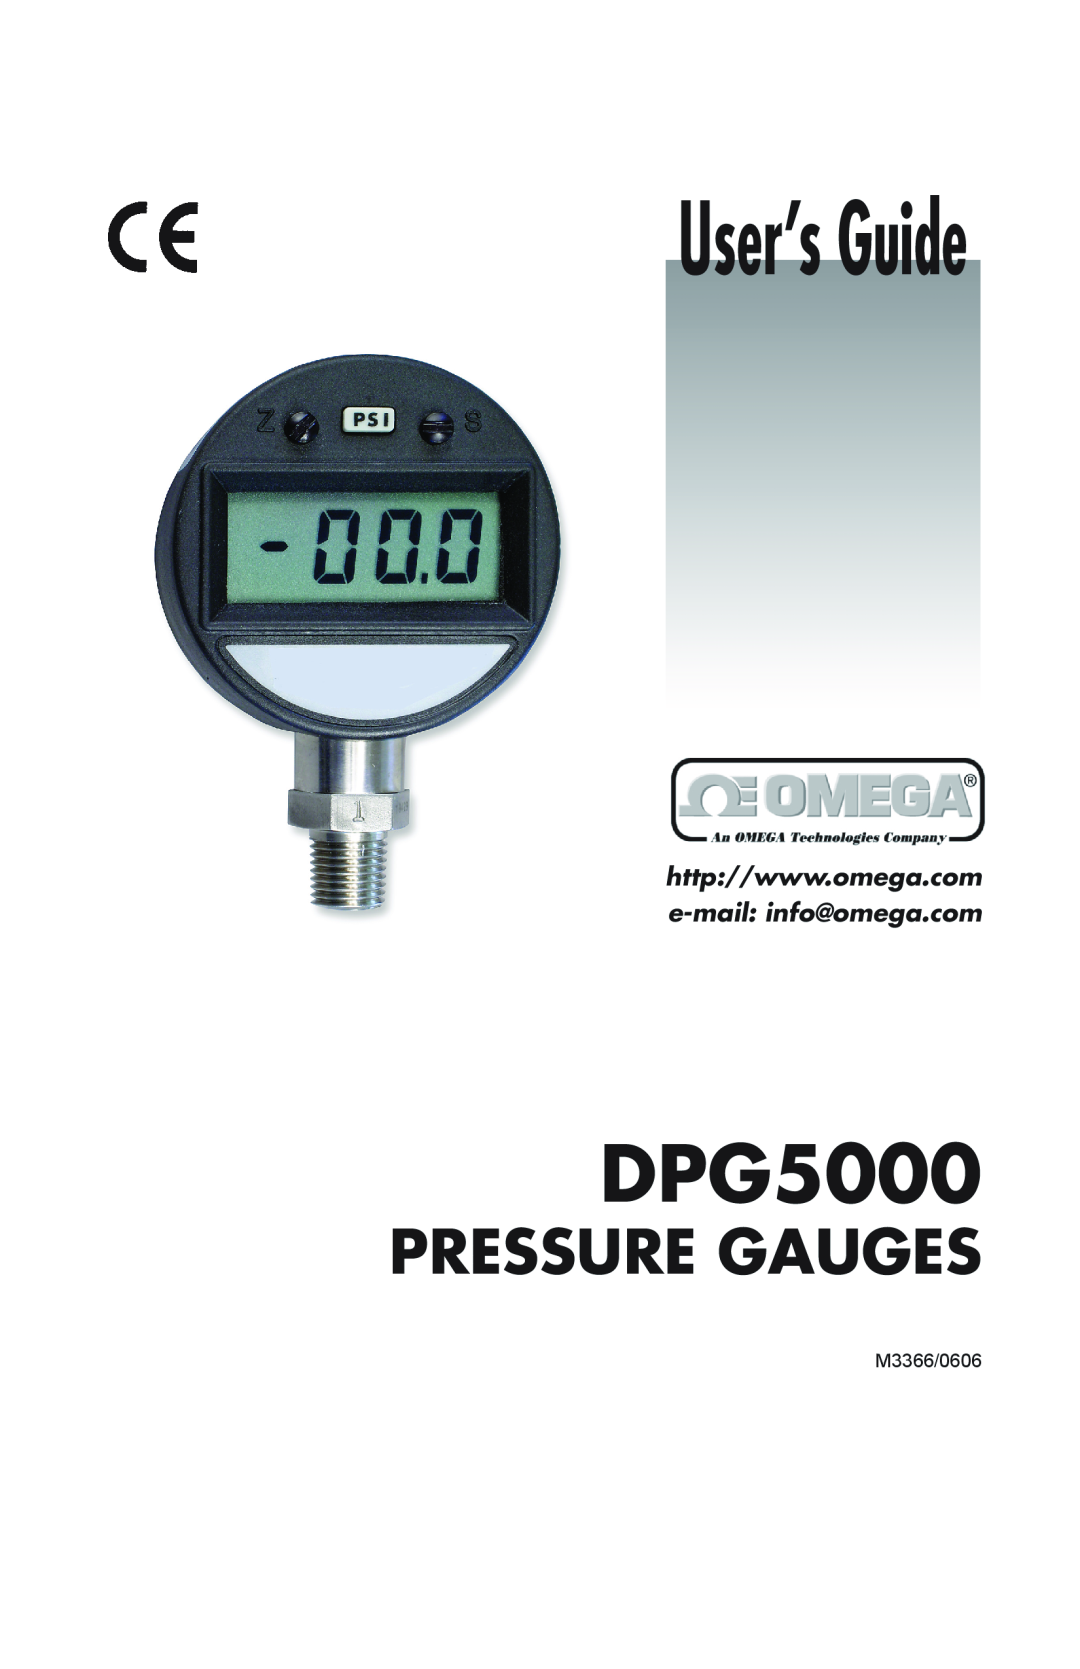 Omega DPG5000 manual User’s Guide, Pressure Gauges, M3366/0606 